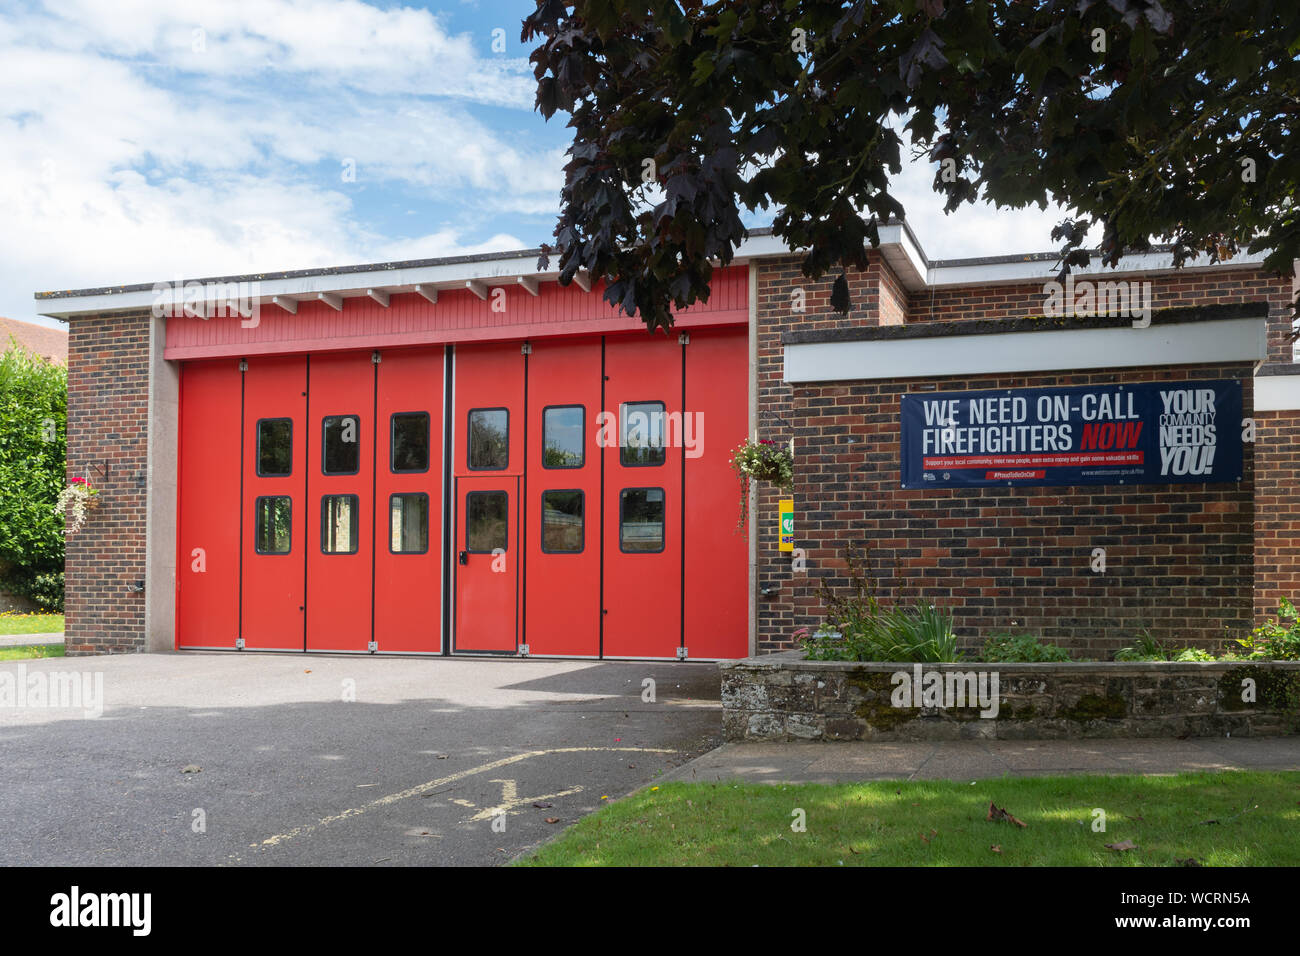 Feuerwache mit Rekrutierung anmelden oder Banner für Feuerwehrmänner, ihre Gemeinschaft braucht Sie, Petworth, West Sussex, Großbritannien Stockfoto